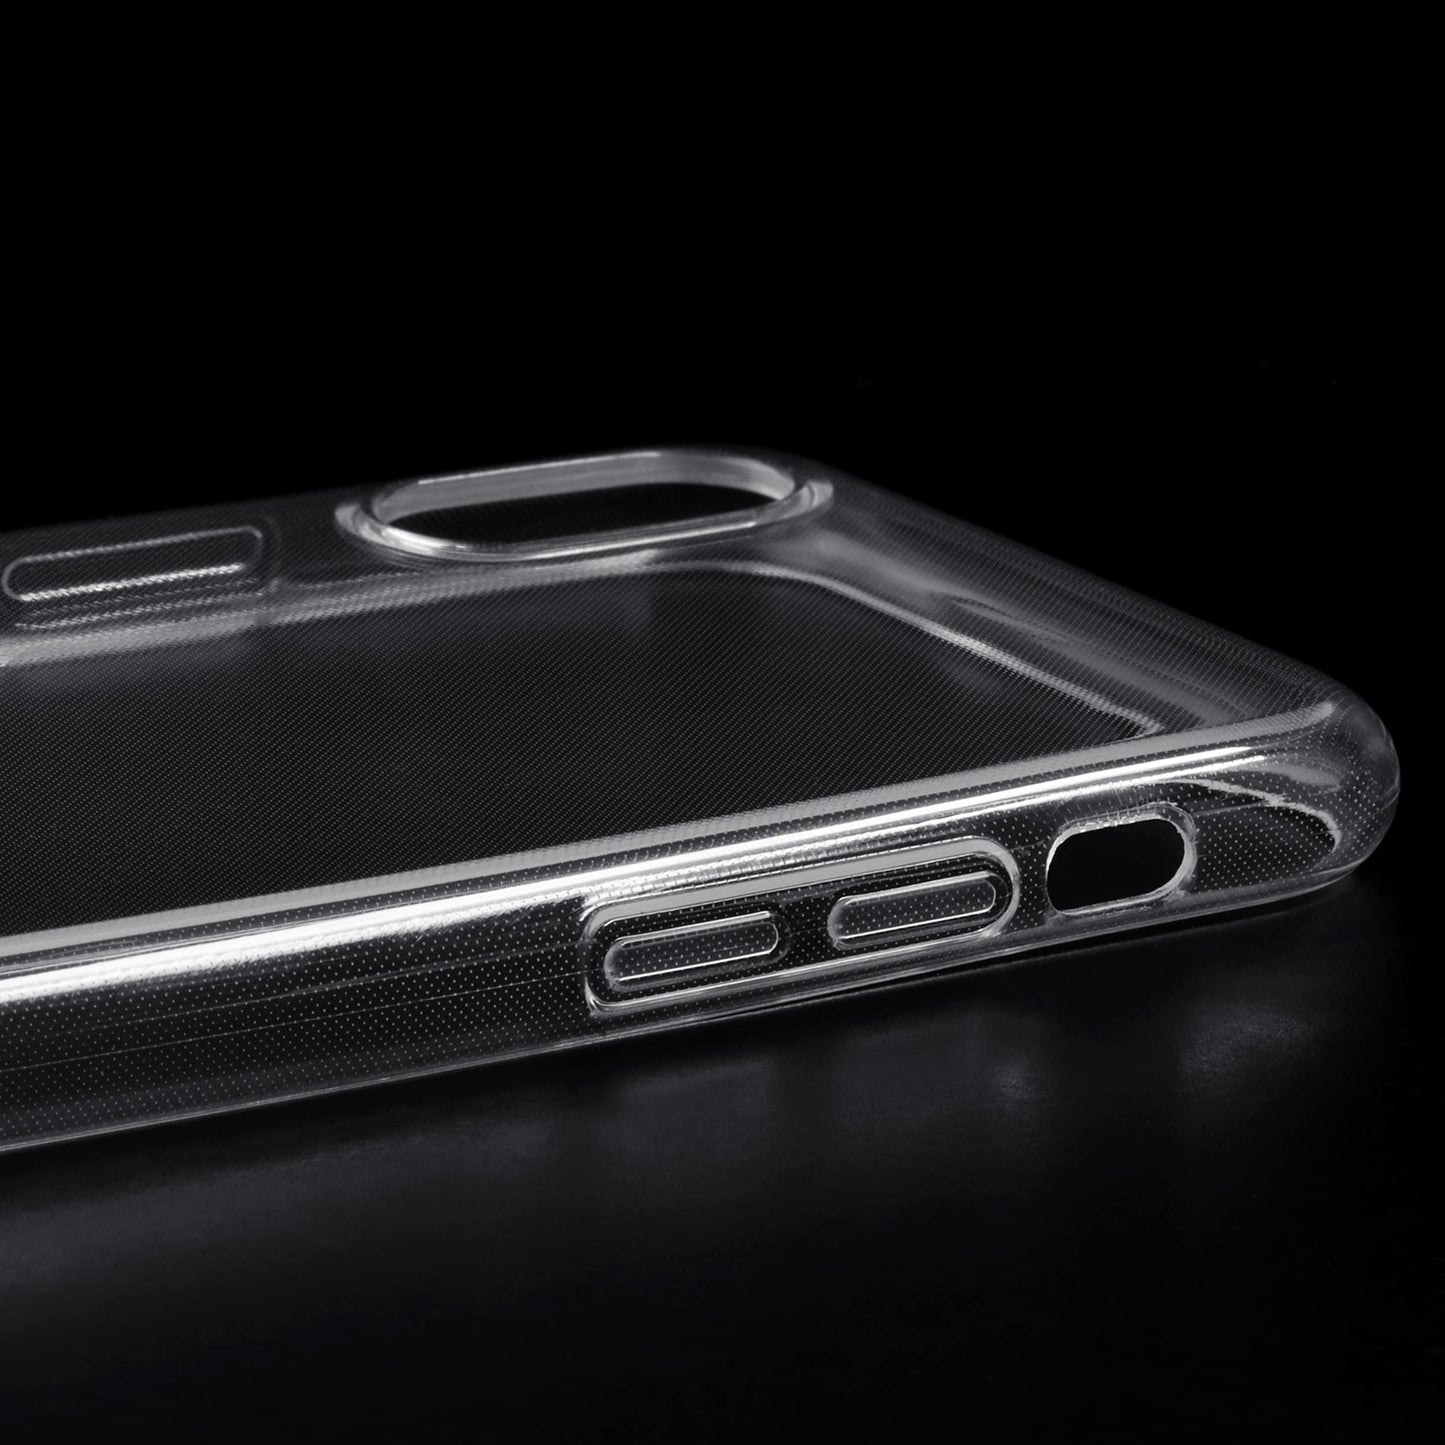 iPhone XS Max - Slim-Case